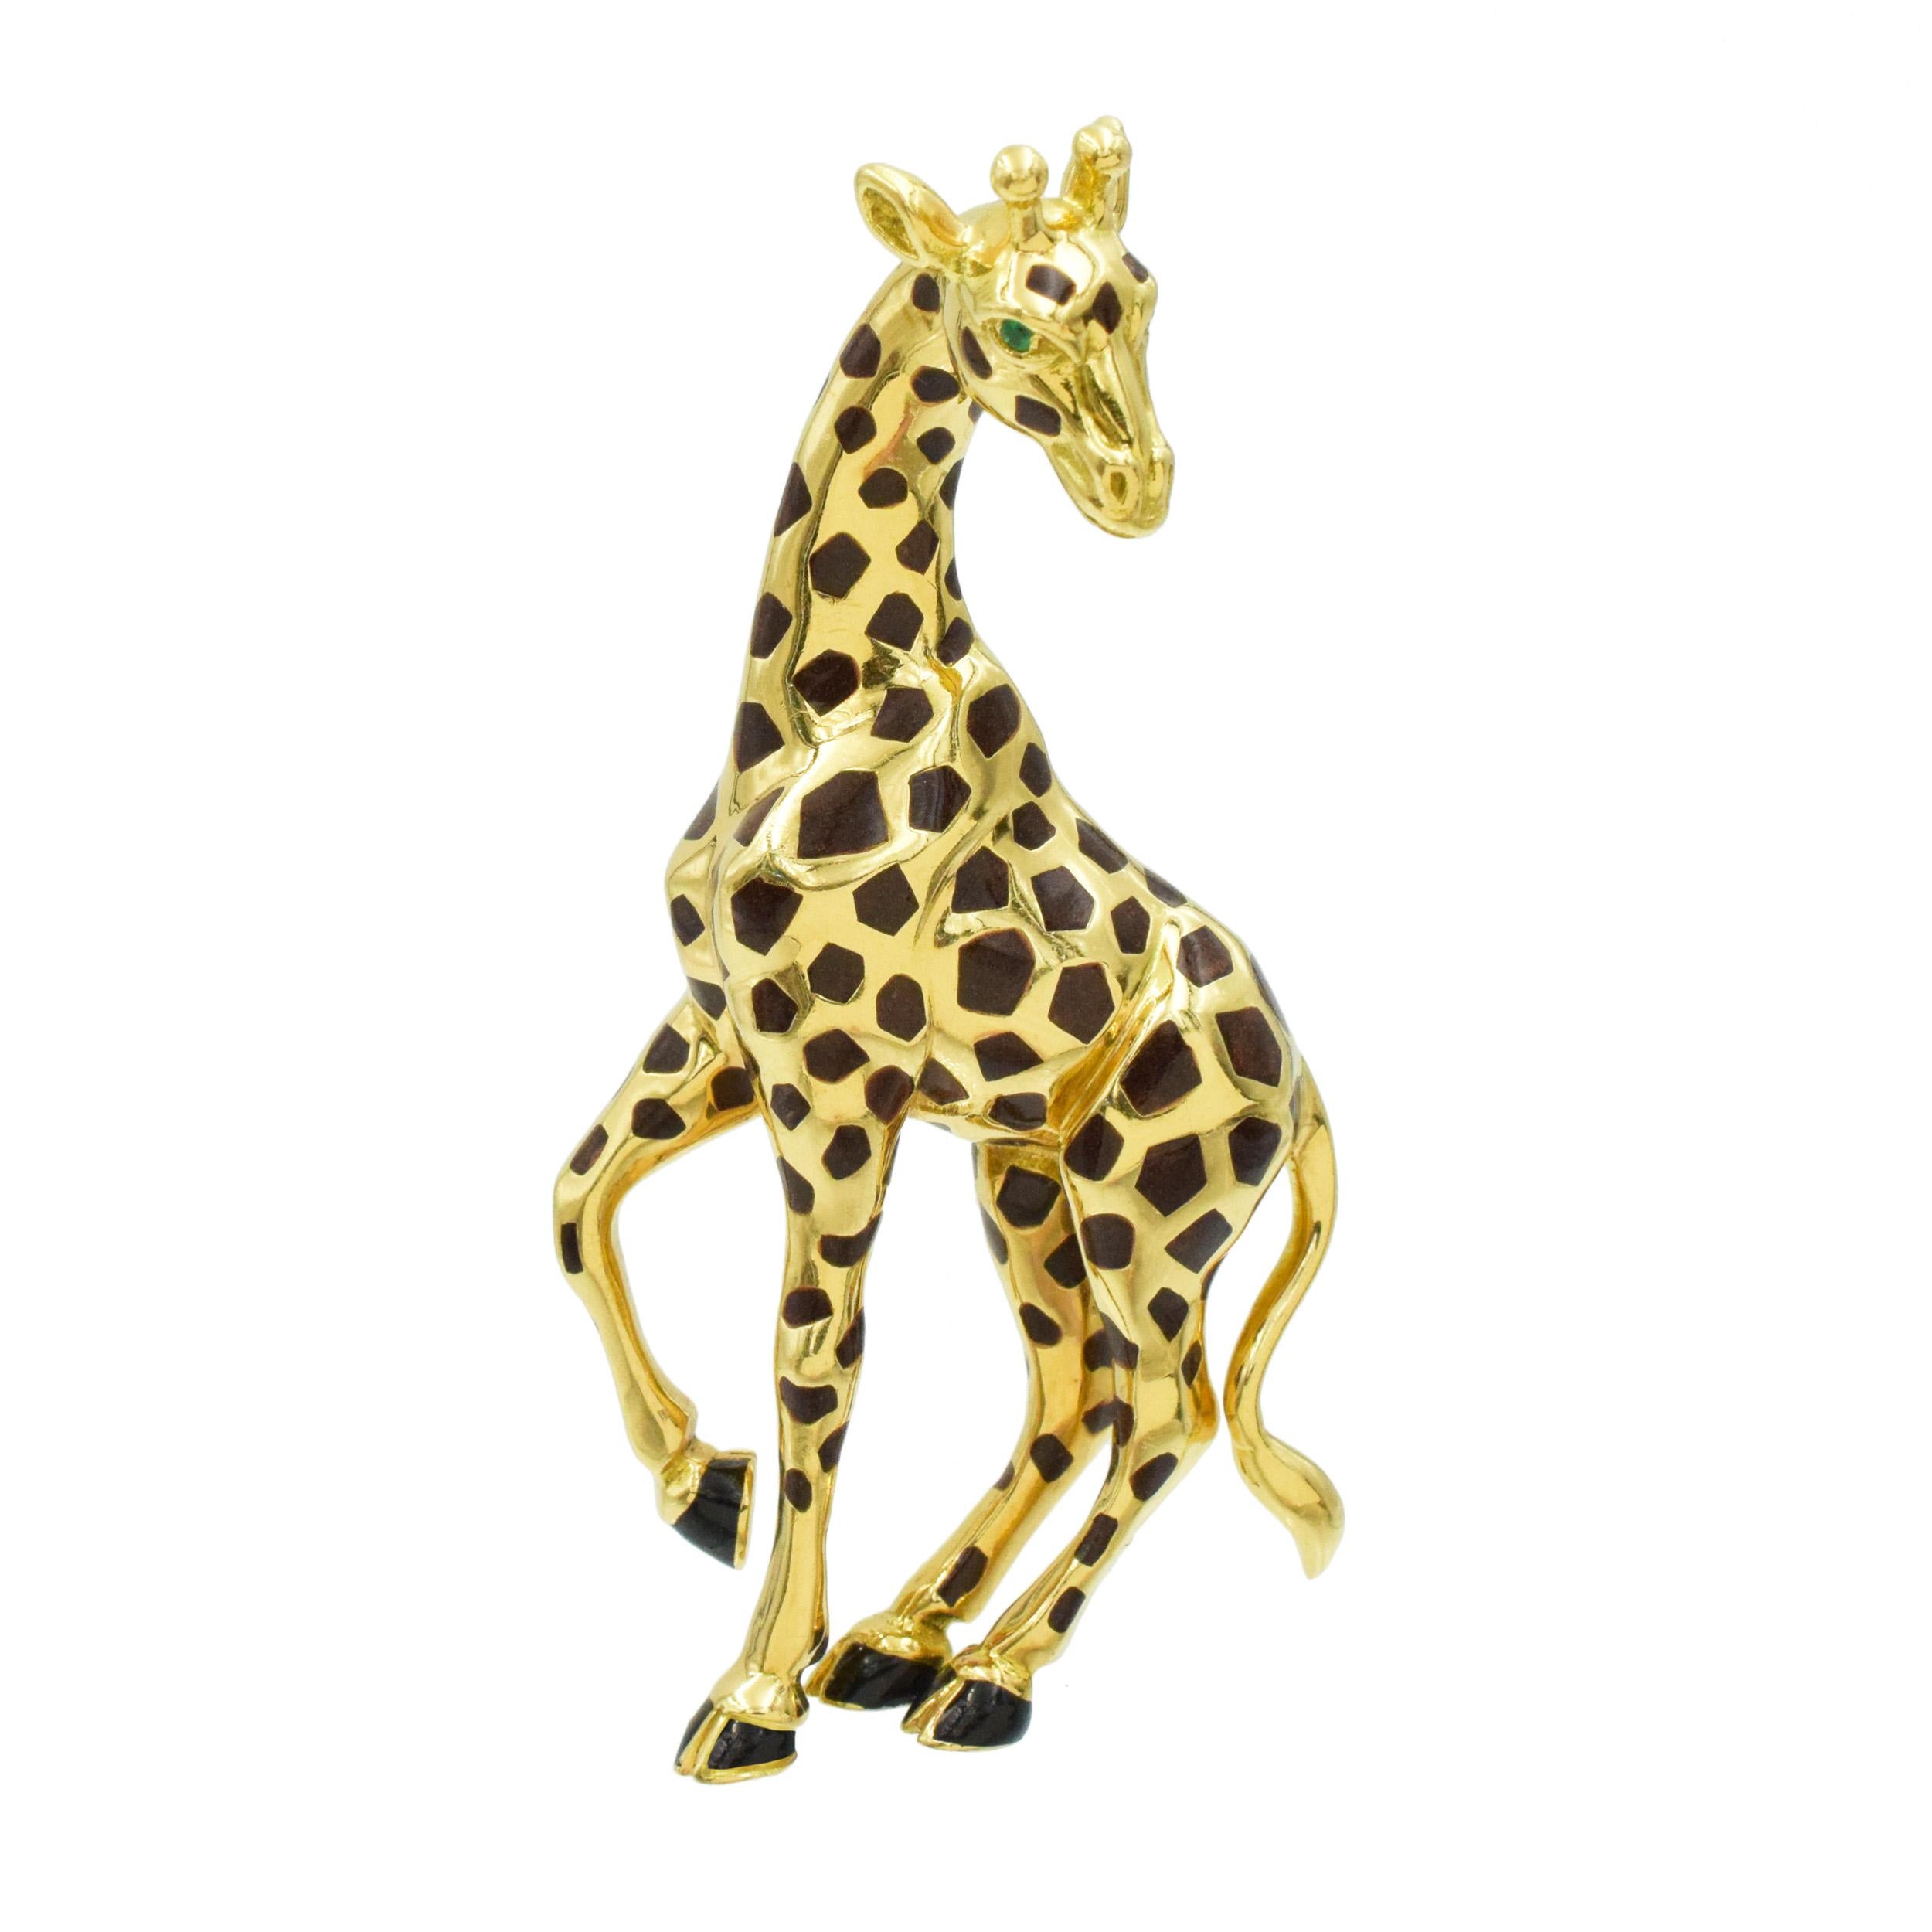 Broche Girafe de Cartier en or jaune 18k, décorée d'émeraudes et d'émail. 
La girafe est émaillée de taches brunes en émail translucide et de sabots en émail noir. Les deux yeux sont sertis d'une émeraude ronde facettée. Équipé d'une double goupille